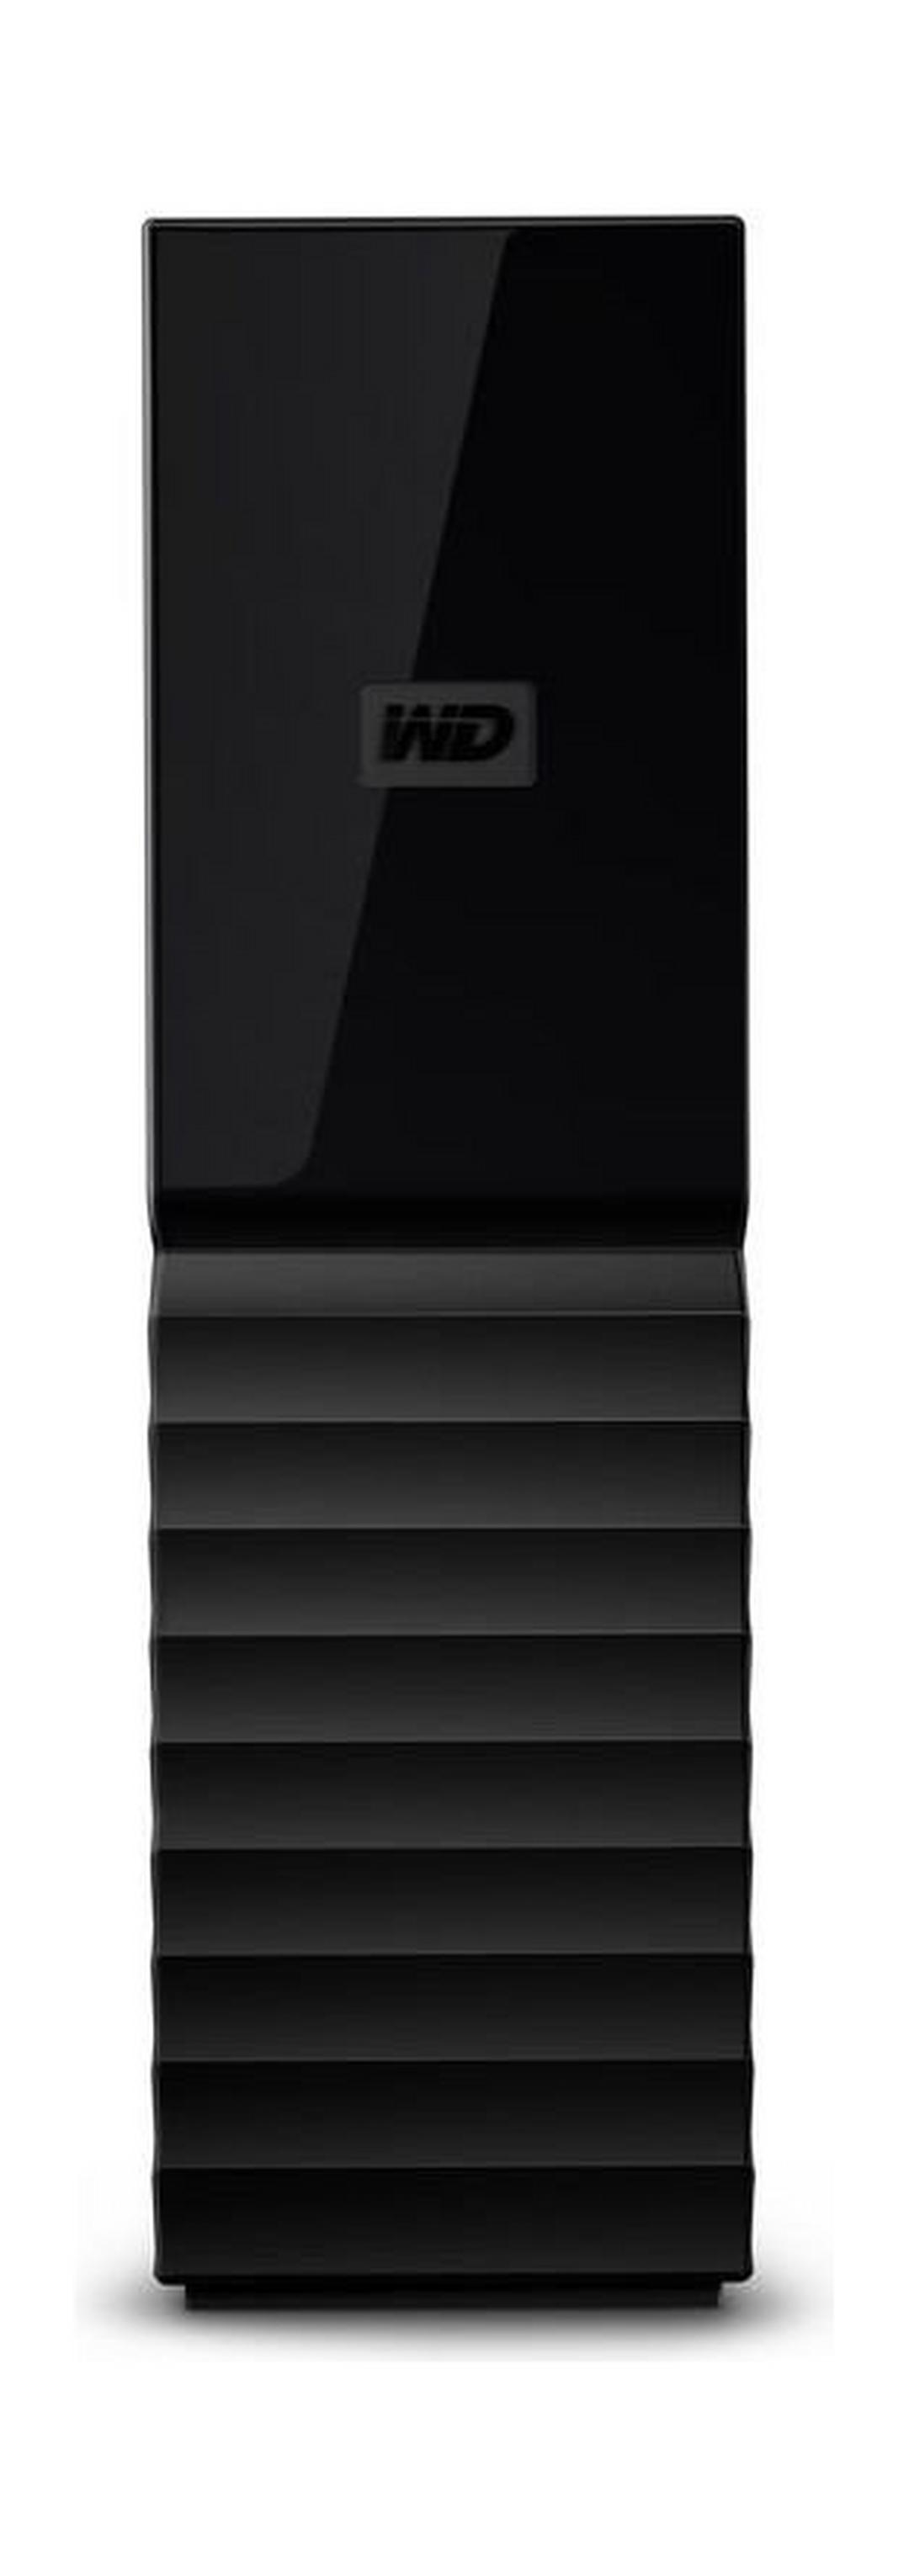 قرص التخزين الخارجي ماي بوك ديسك توب سعة ٤ تيرابايت بمنفذ يو إس بي ٣,٠ من ويسترن ديجيتال (WDBBGB0040HBK)